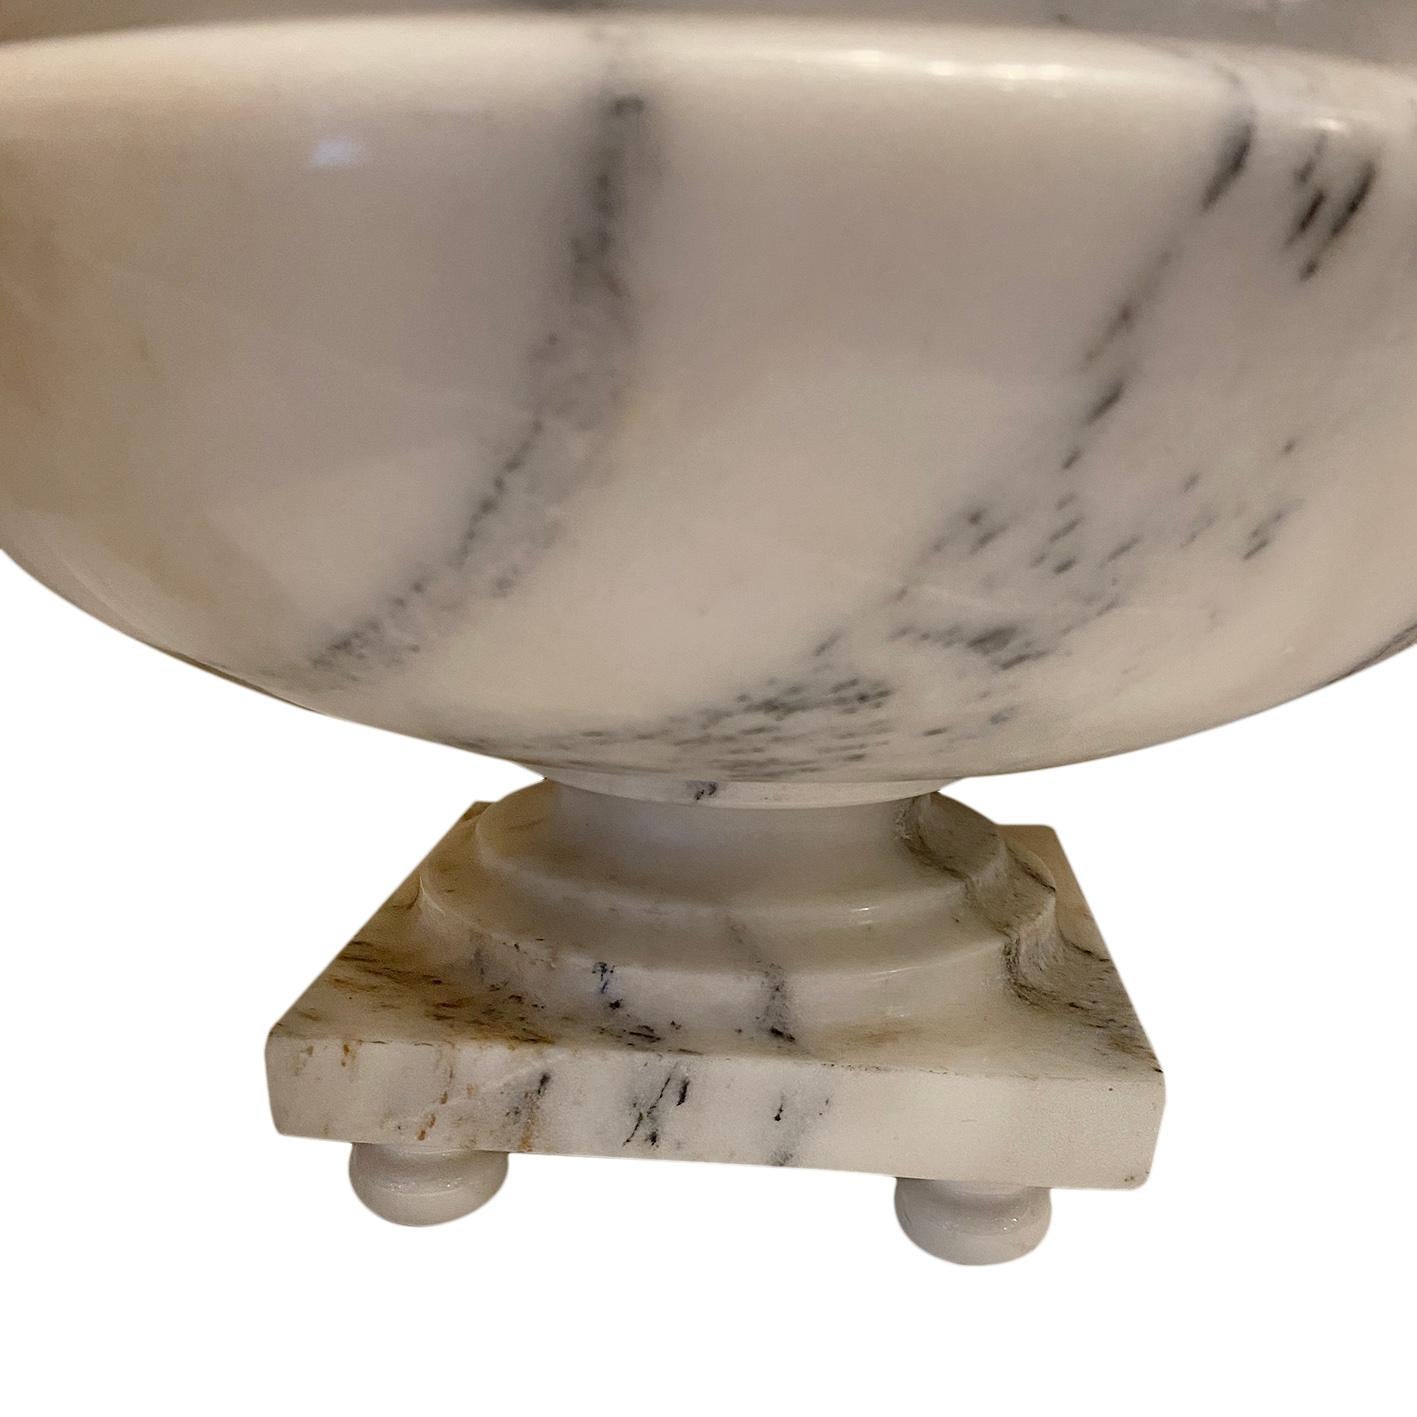 Paire de lampes de table à piédestal en albâtre sculpté, datant des années 1930. Celles-ci peuvent également être modifiées en tant qu'objets décoratifs sans la tige de la lampe.

Mesures :
Hauteur du corps : 18